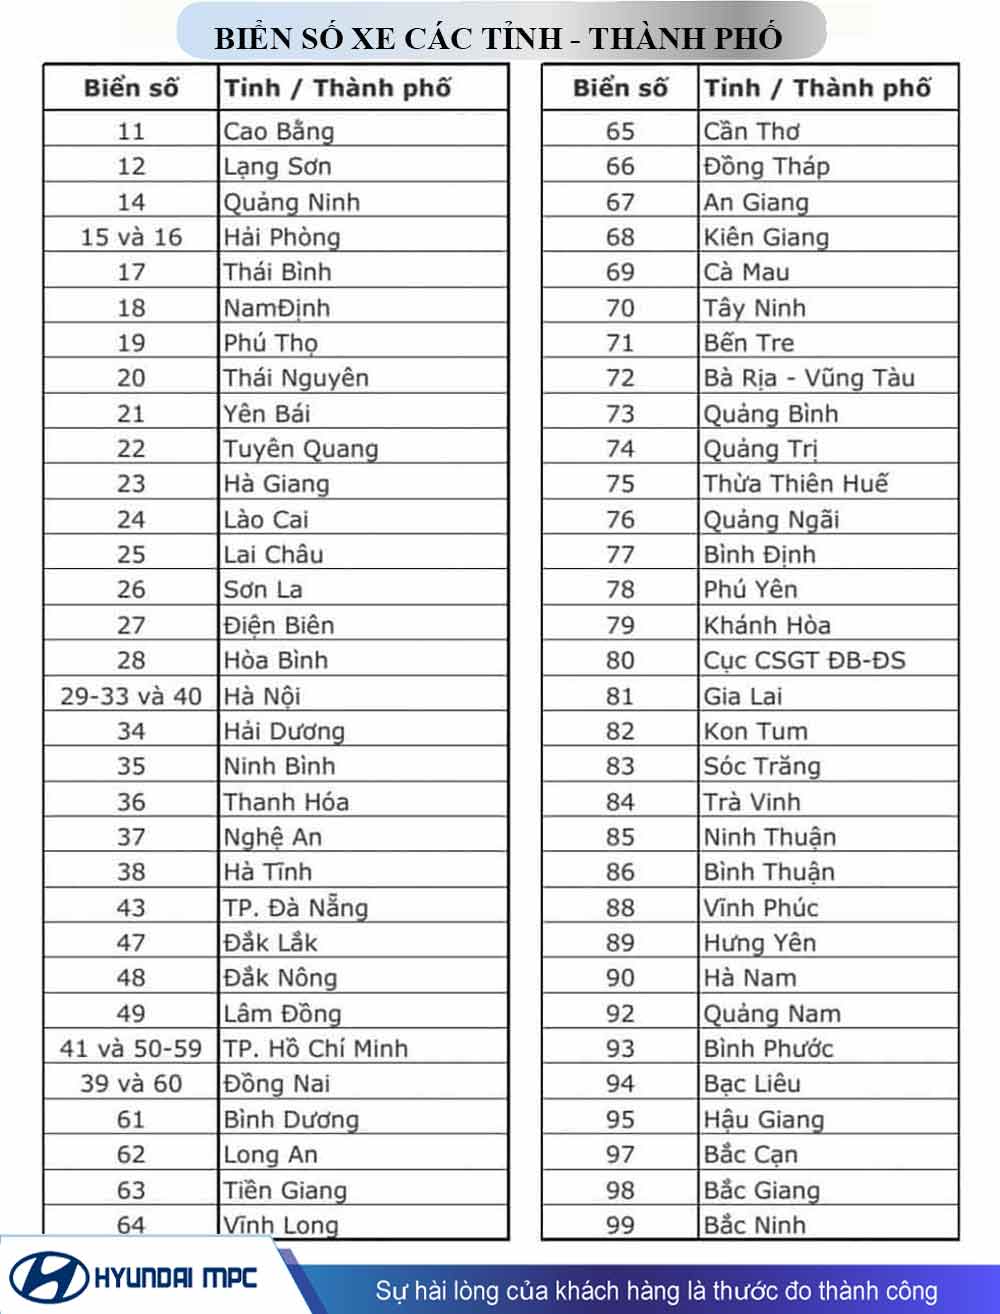 74 là tỉnh nào? Tìm hiểu về biển số xe 74 tại Quảng Trị